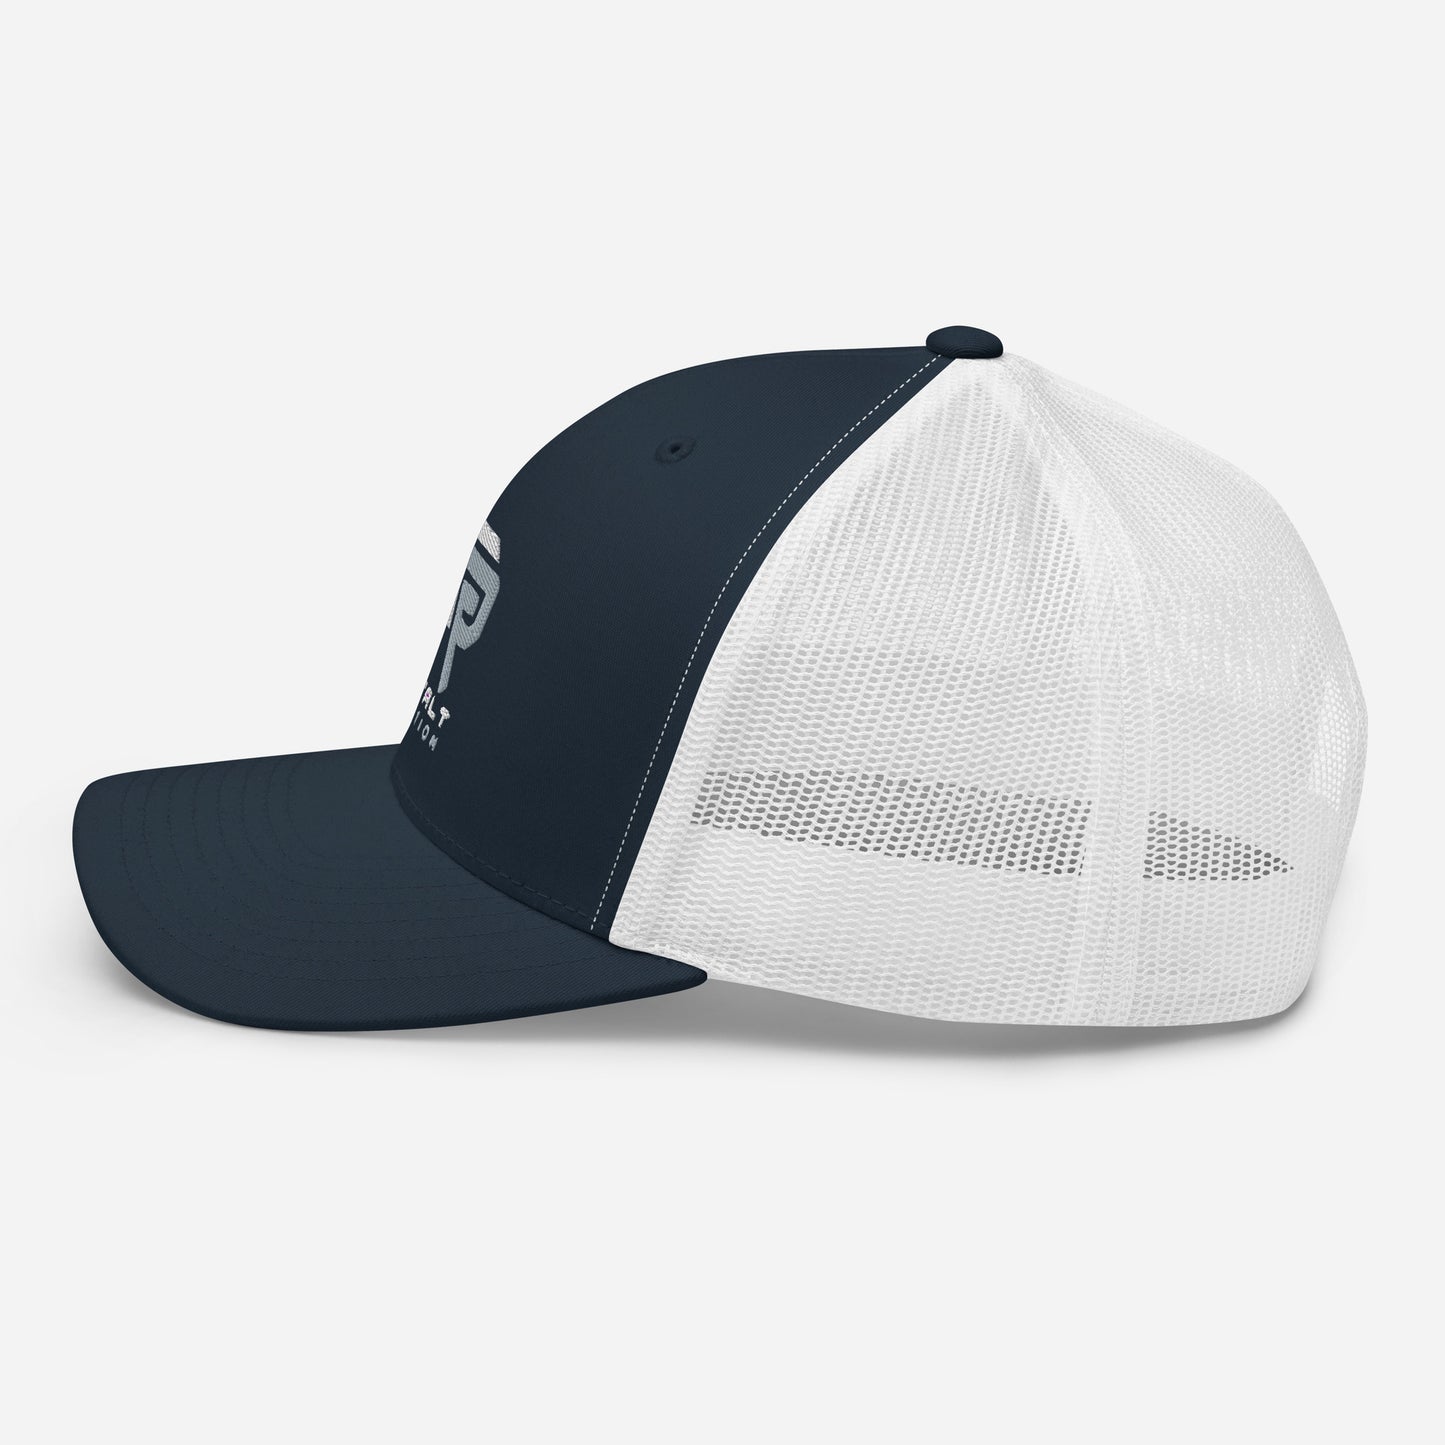 Regular Mesh Back Hat [Embroidered Design]